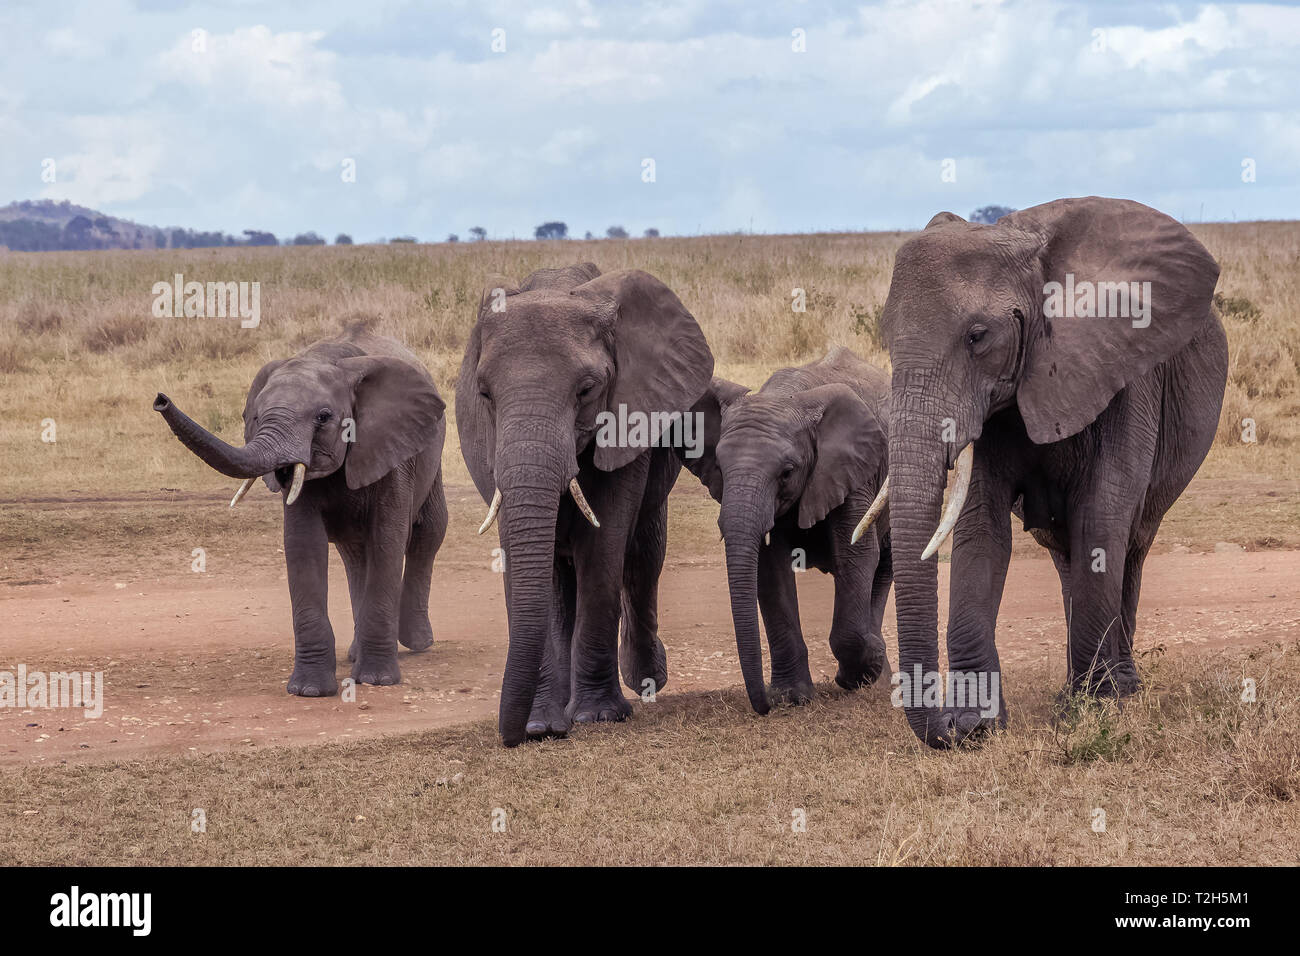 Der Elefant ist das größte Land Säugetier. Mit seinen Stamm, es kann nicht nur riechen, sondern auch fühlen und begreifen. Elefanten haben einen ausgeprägten Sozialverhalten. Stockfoto